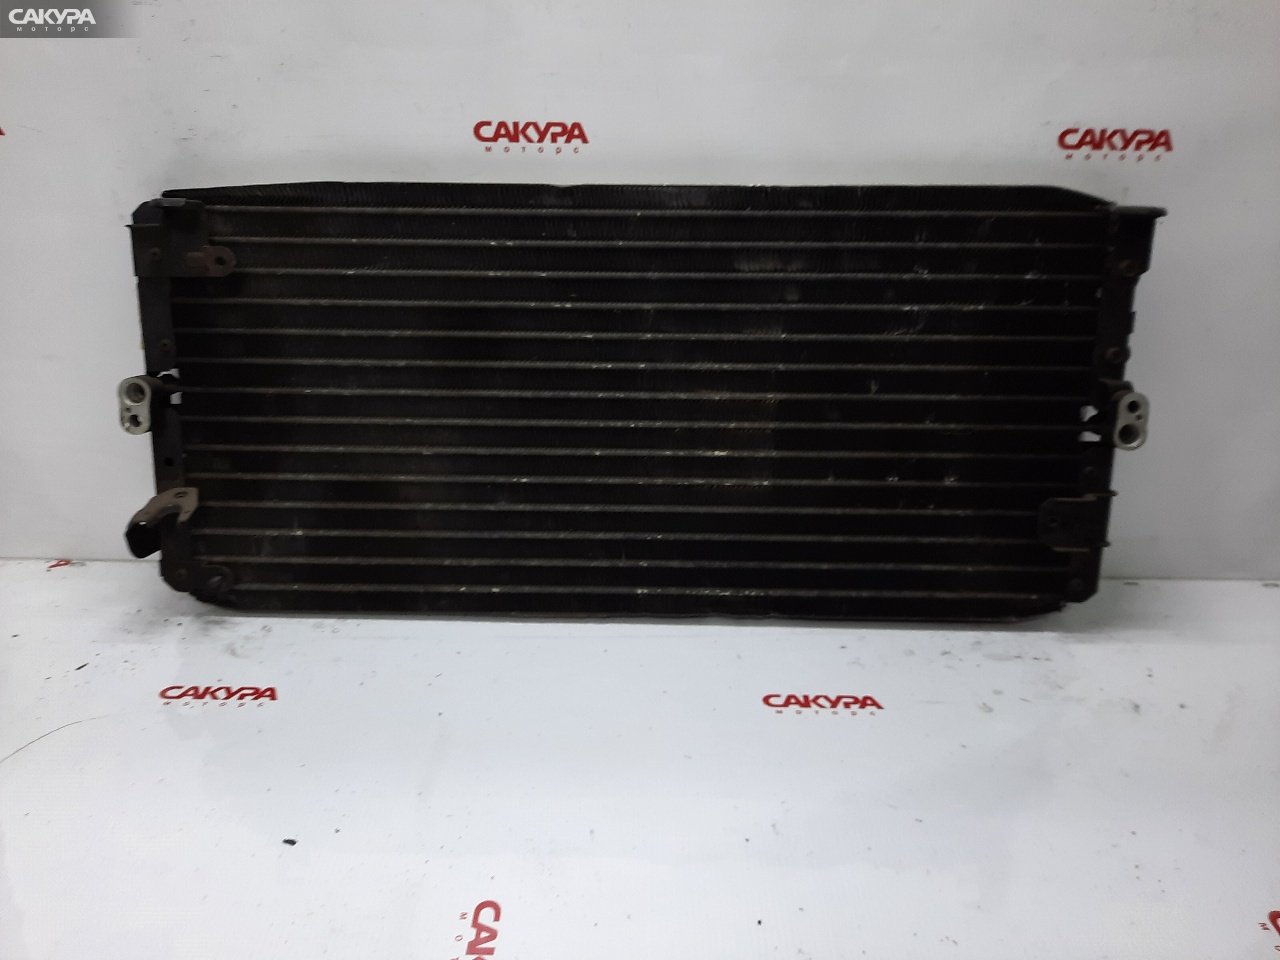 Радиатор кондиционера Toyota Carina ST170 4S-FE: купить в Сакура Красноярск.